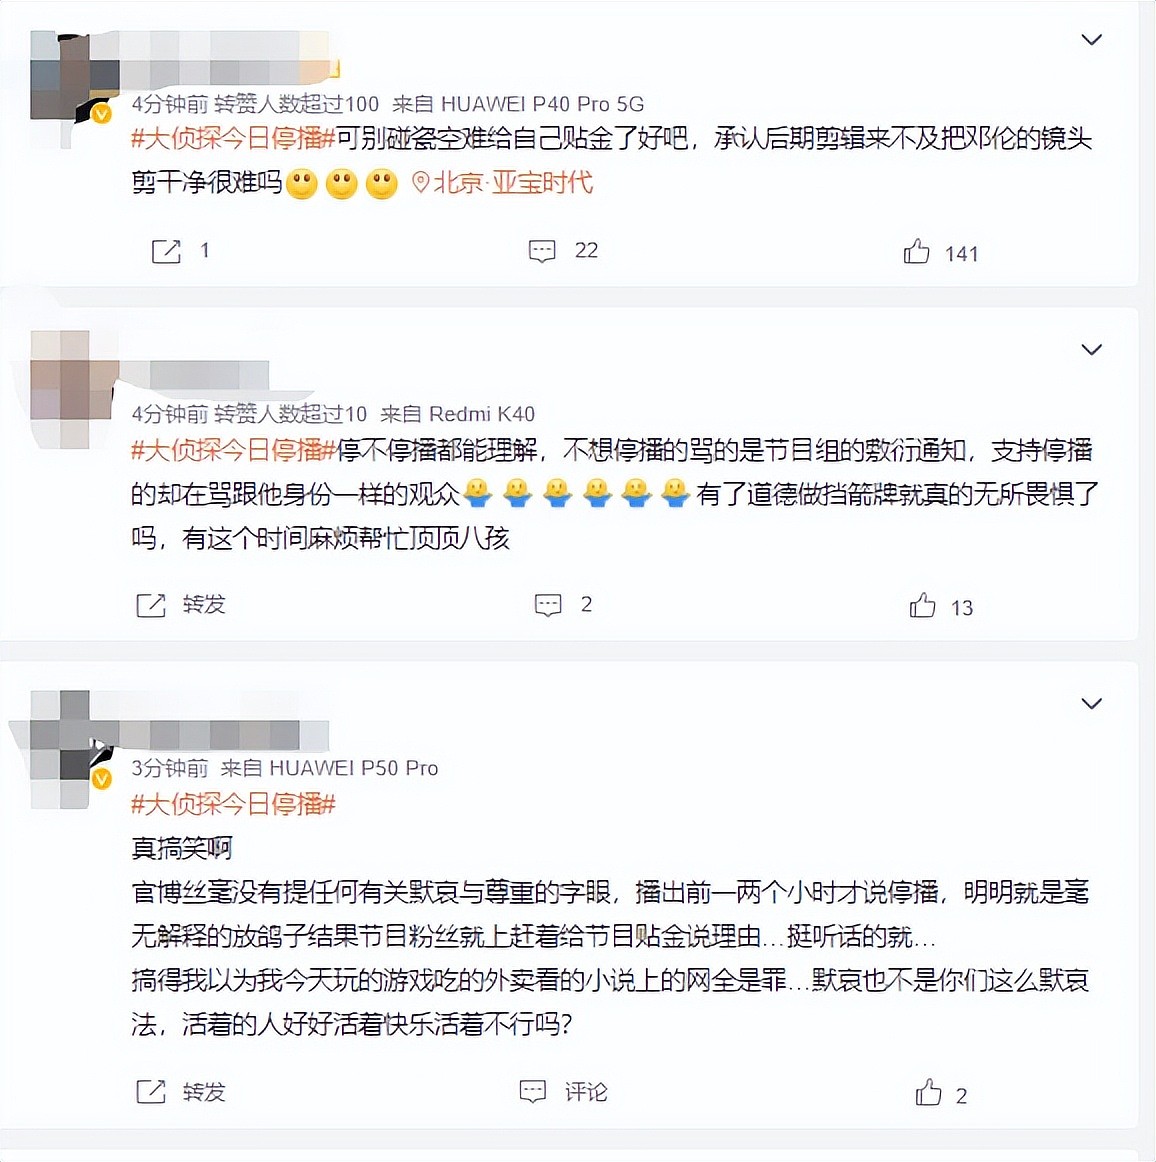 空难第4天湖南台坚持禁娱，临时停播综艺惹众怒，被网友骂上热搜